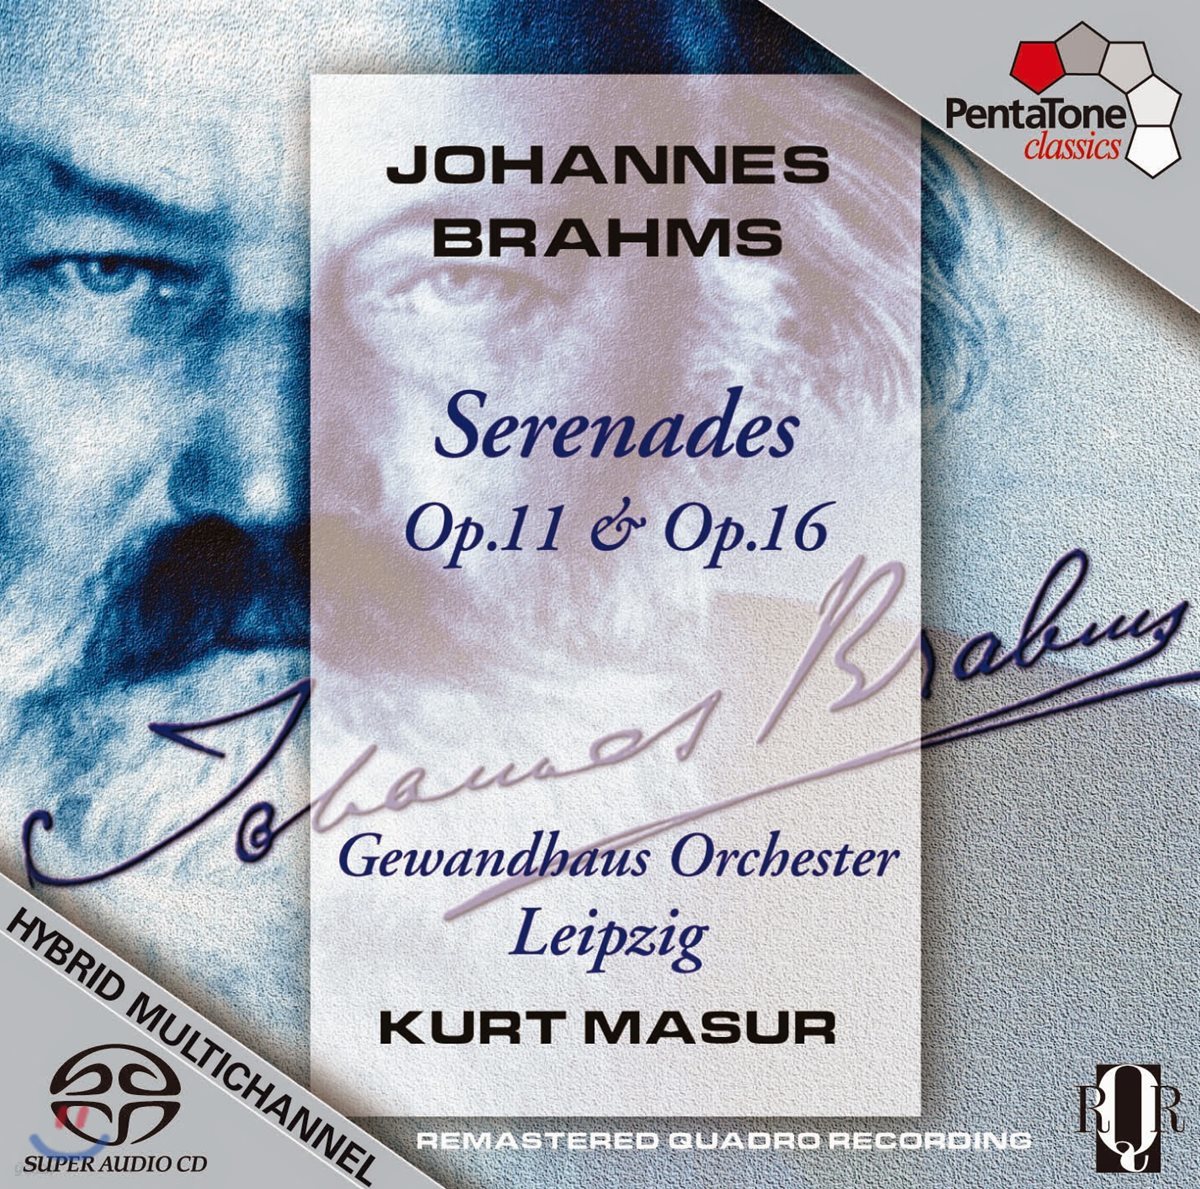 Kurt Masur 브람스: 세레나데 1, 2번 (Brahms: Serenades Op.11, Op. 16)